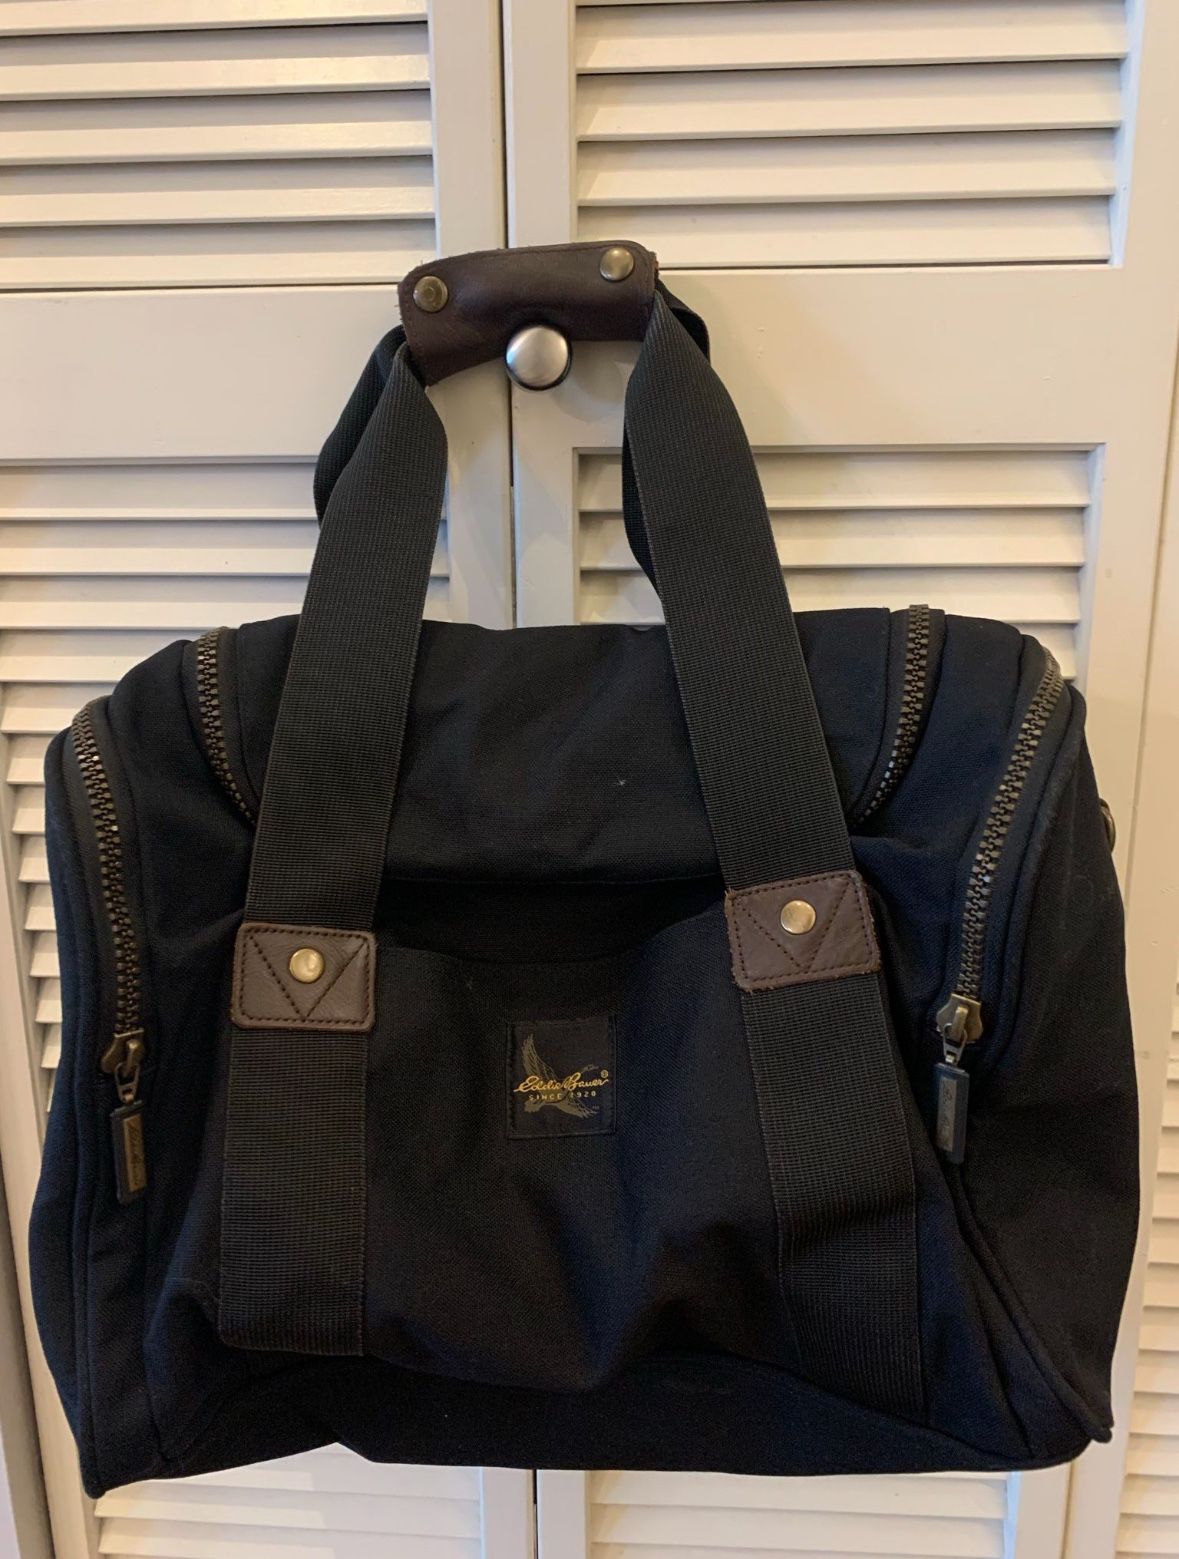 Vintage Eddie Bauer Carry On Duffel Gym Bag Luggage Black Canvas w/ Leather Trim